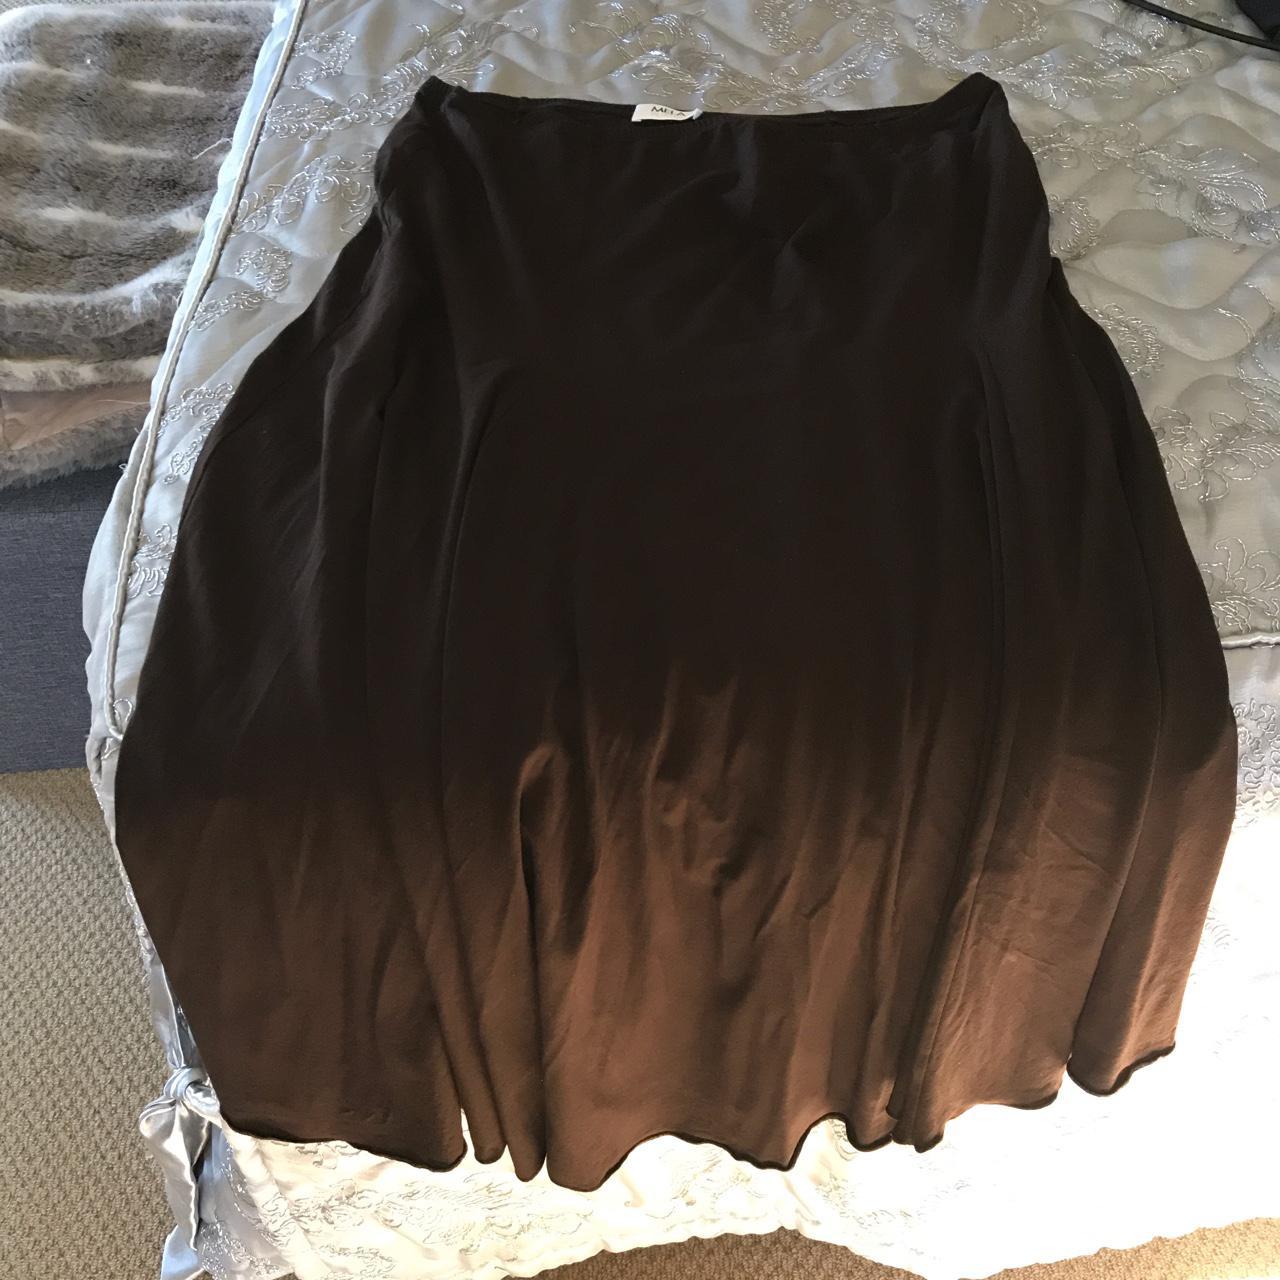 Gorgous chocolate brown Mela Purdie skirt...non iron... - Depop